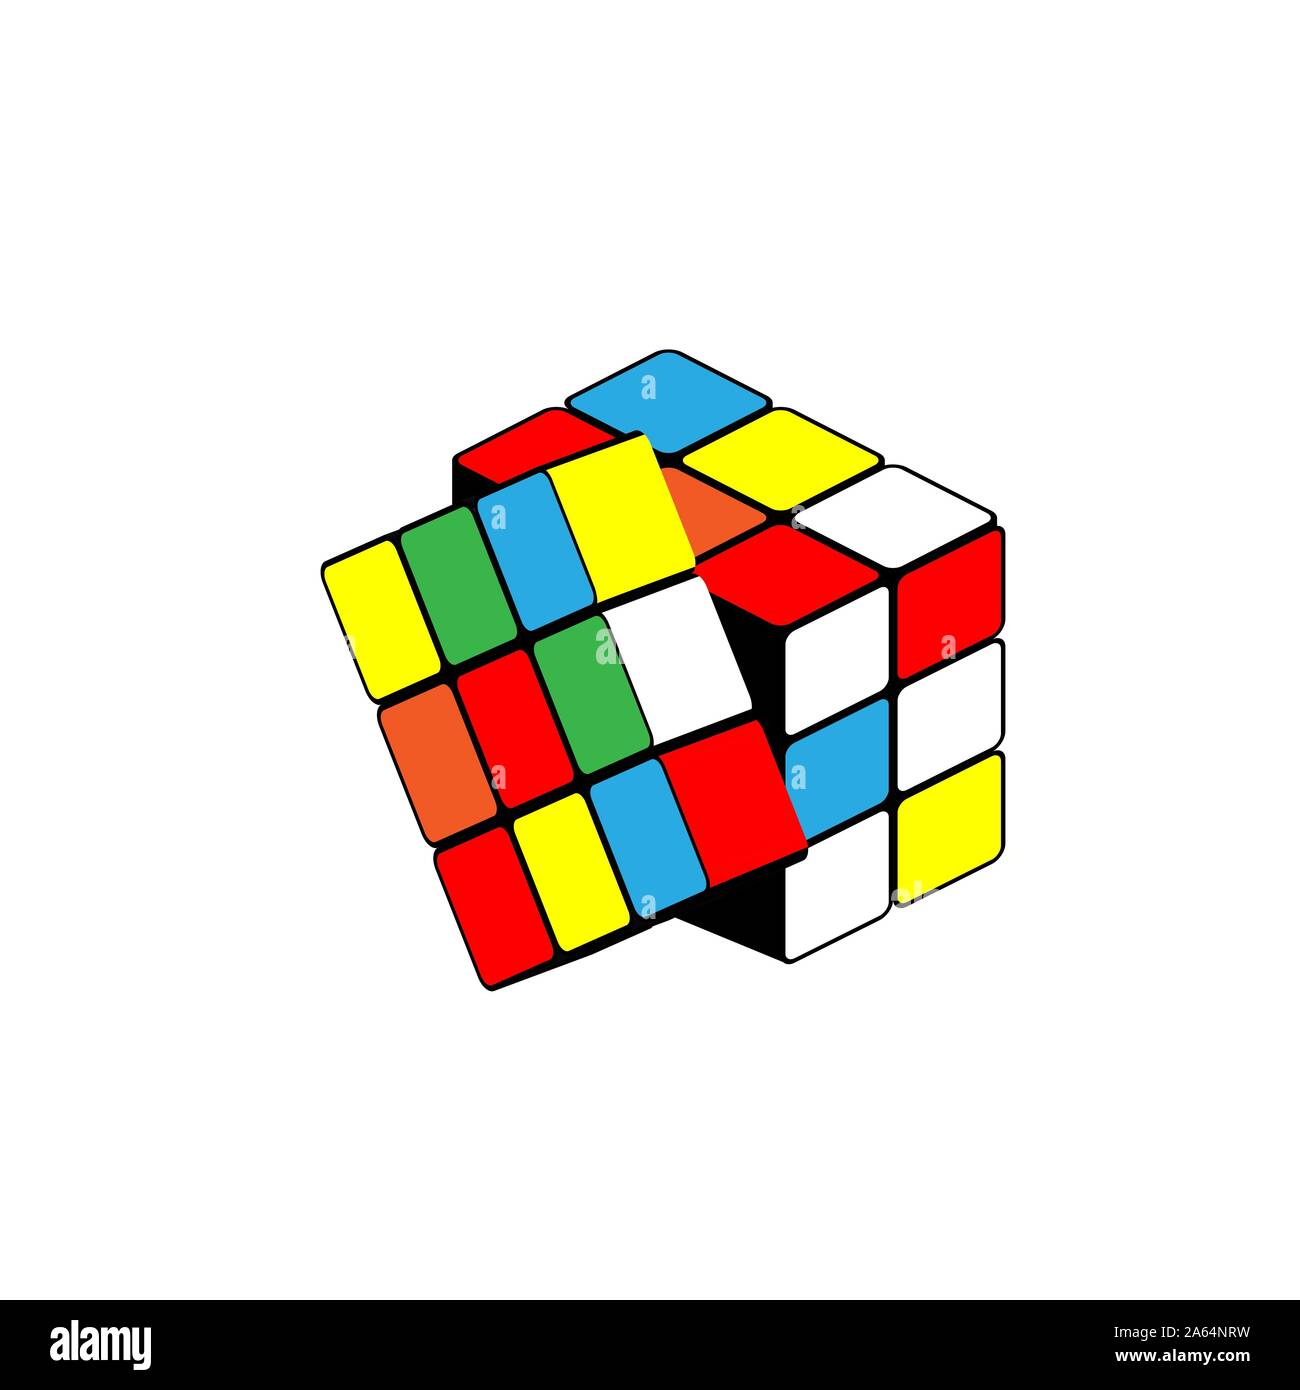 Das Puzzle isometrische Rubik's Cube. Vector Illustration auf weißem Hintergrund Stock Vektor